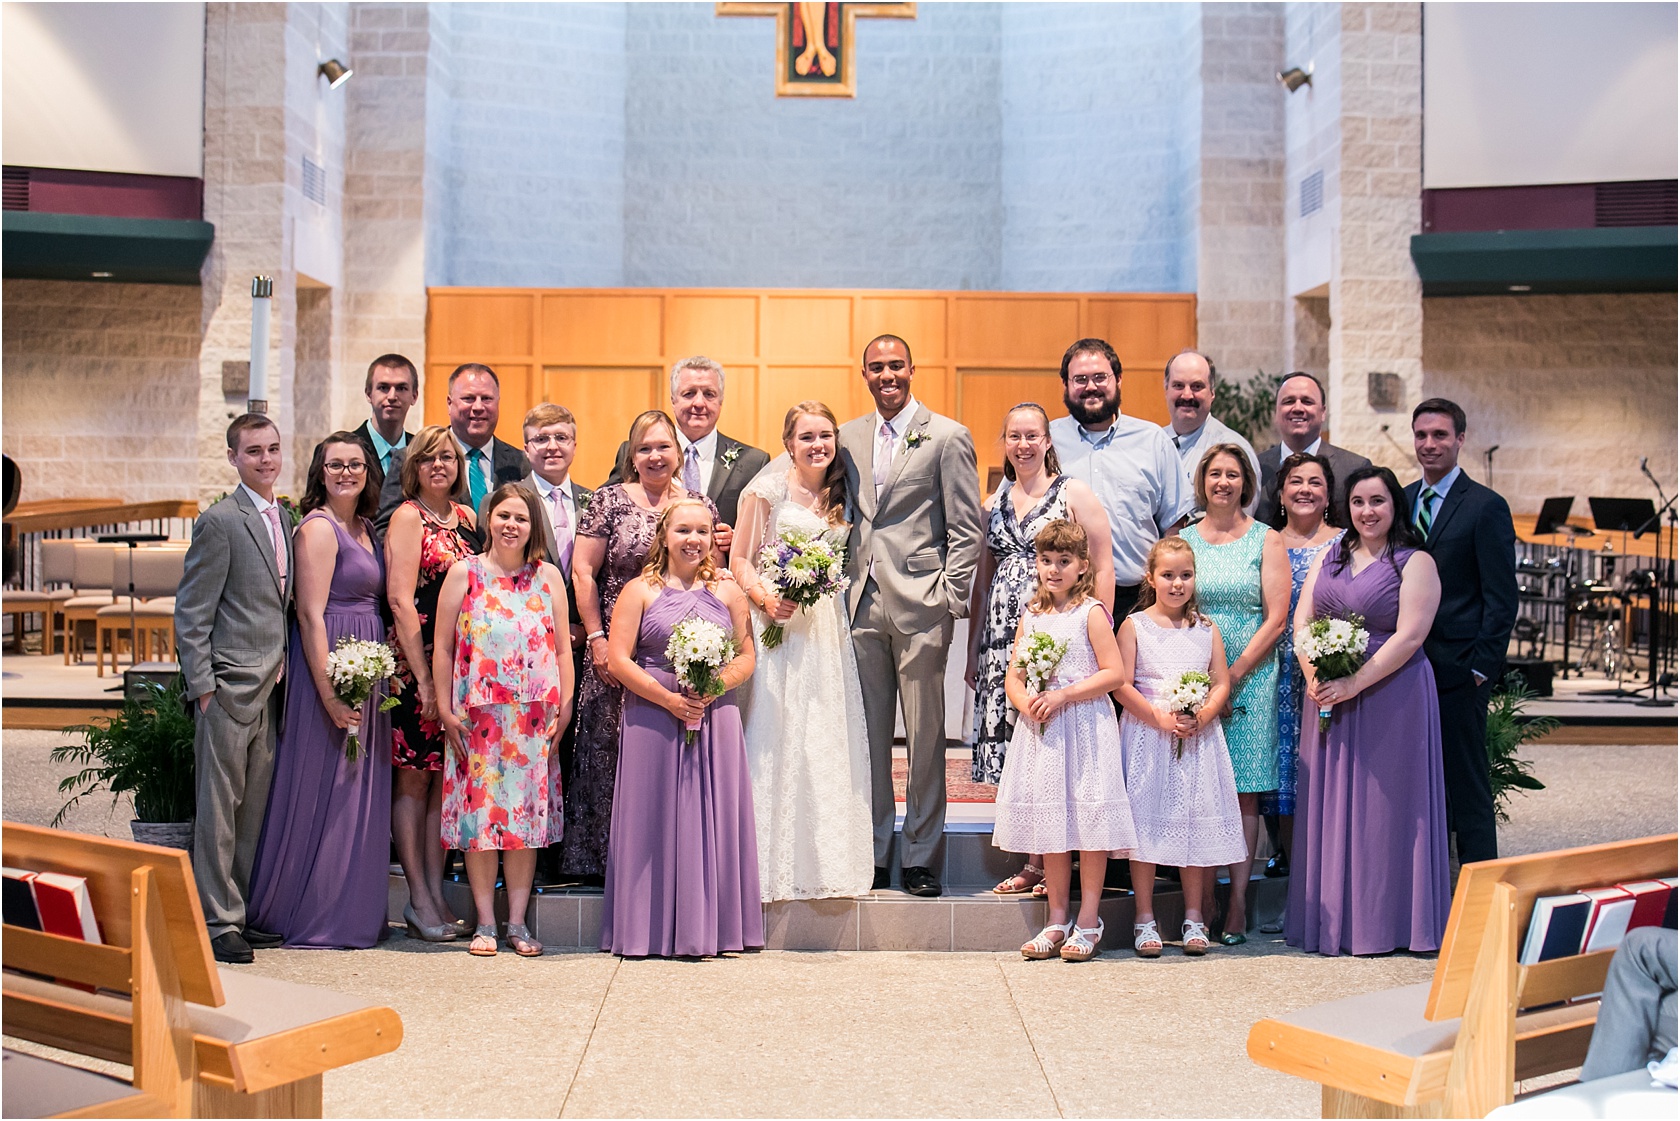 Wesley Holy Family Catholic Community WeddingLivingRadiantPhotographyphotos-5WesleyHolyFamilyCatholicCommunity Wedding Living Radiant Photography photos_0100.jpg